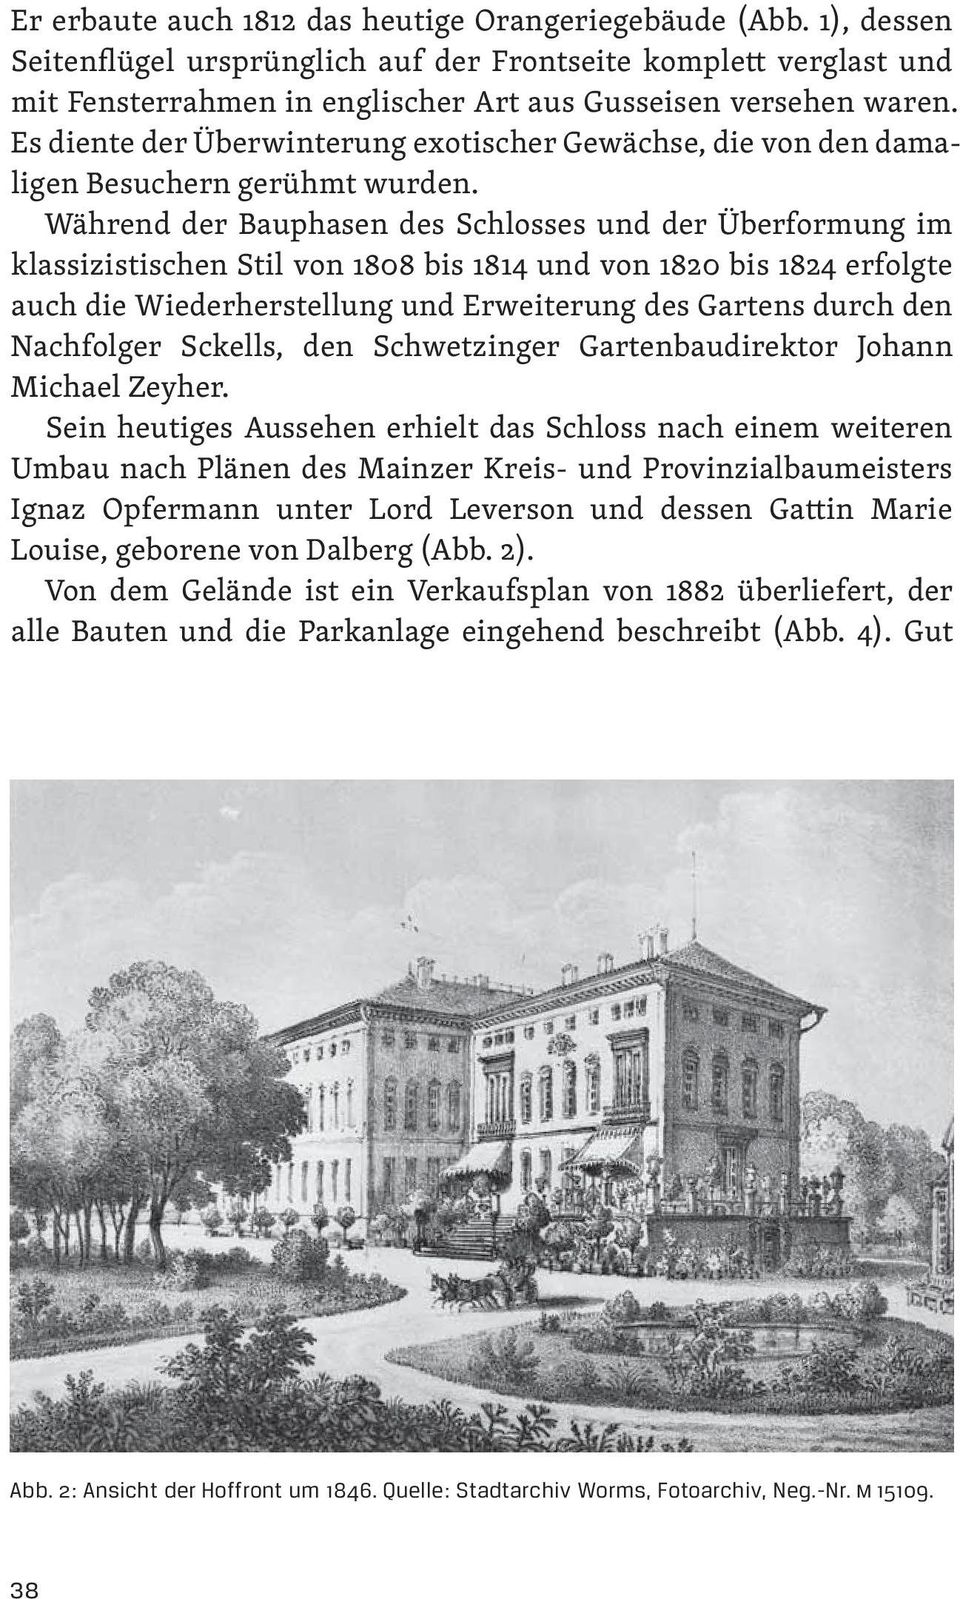 Während der Bauphasen des Schlosses und der Überformung im klassizistischen Stil von 1808 bis 1814 und von 1820 bis 1824 erfolgte auch die Wiederherstellung und Erweiterung des Gartens durch den